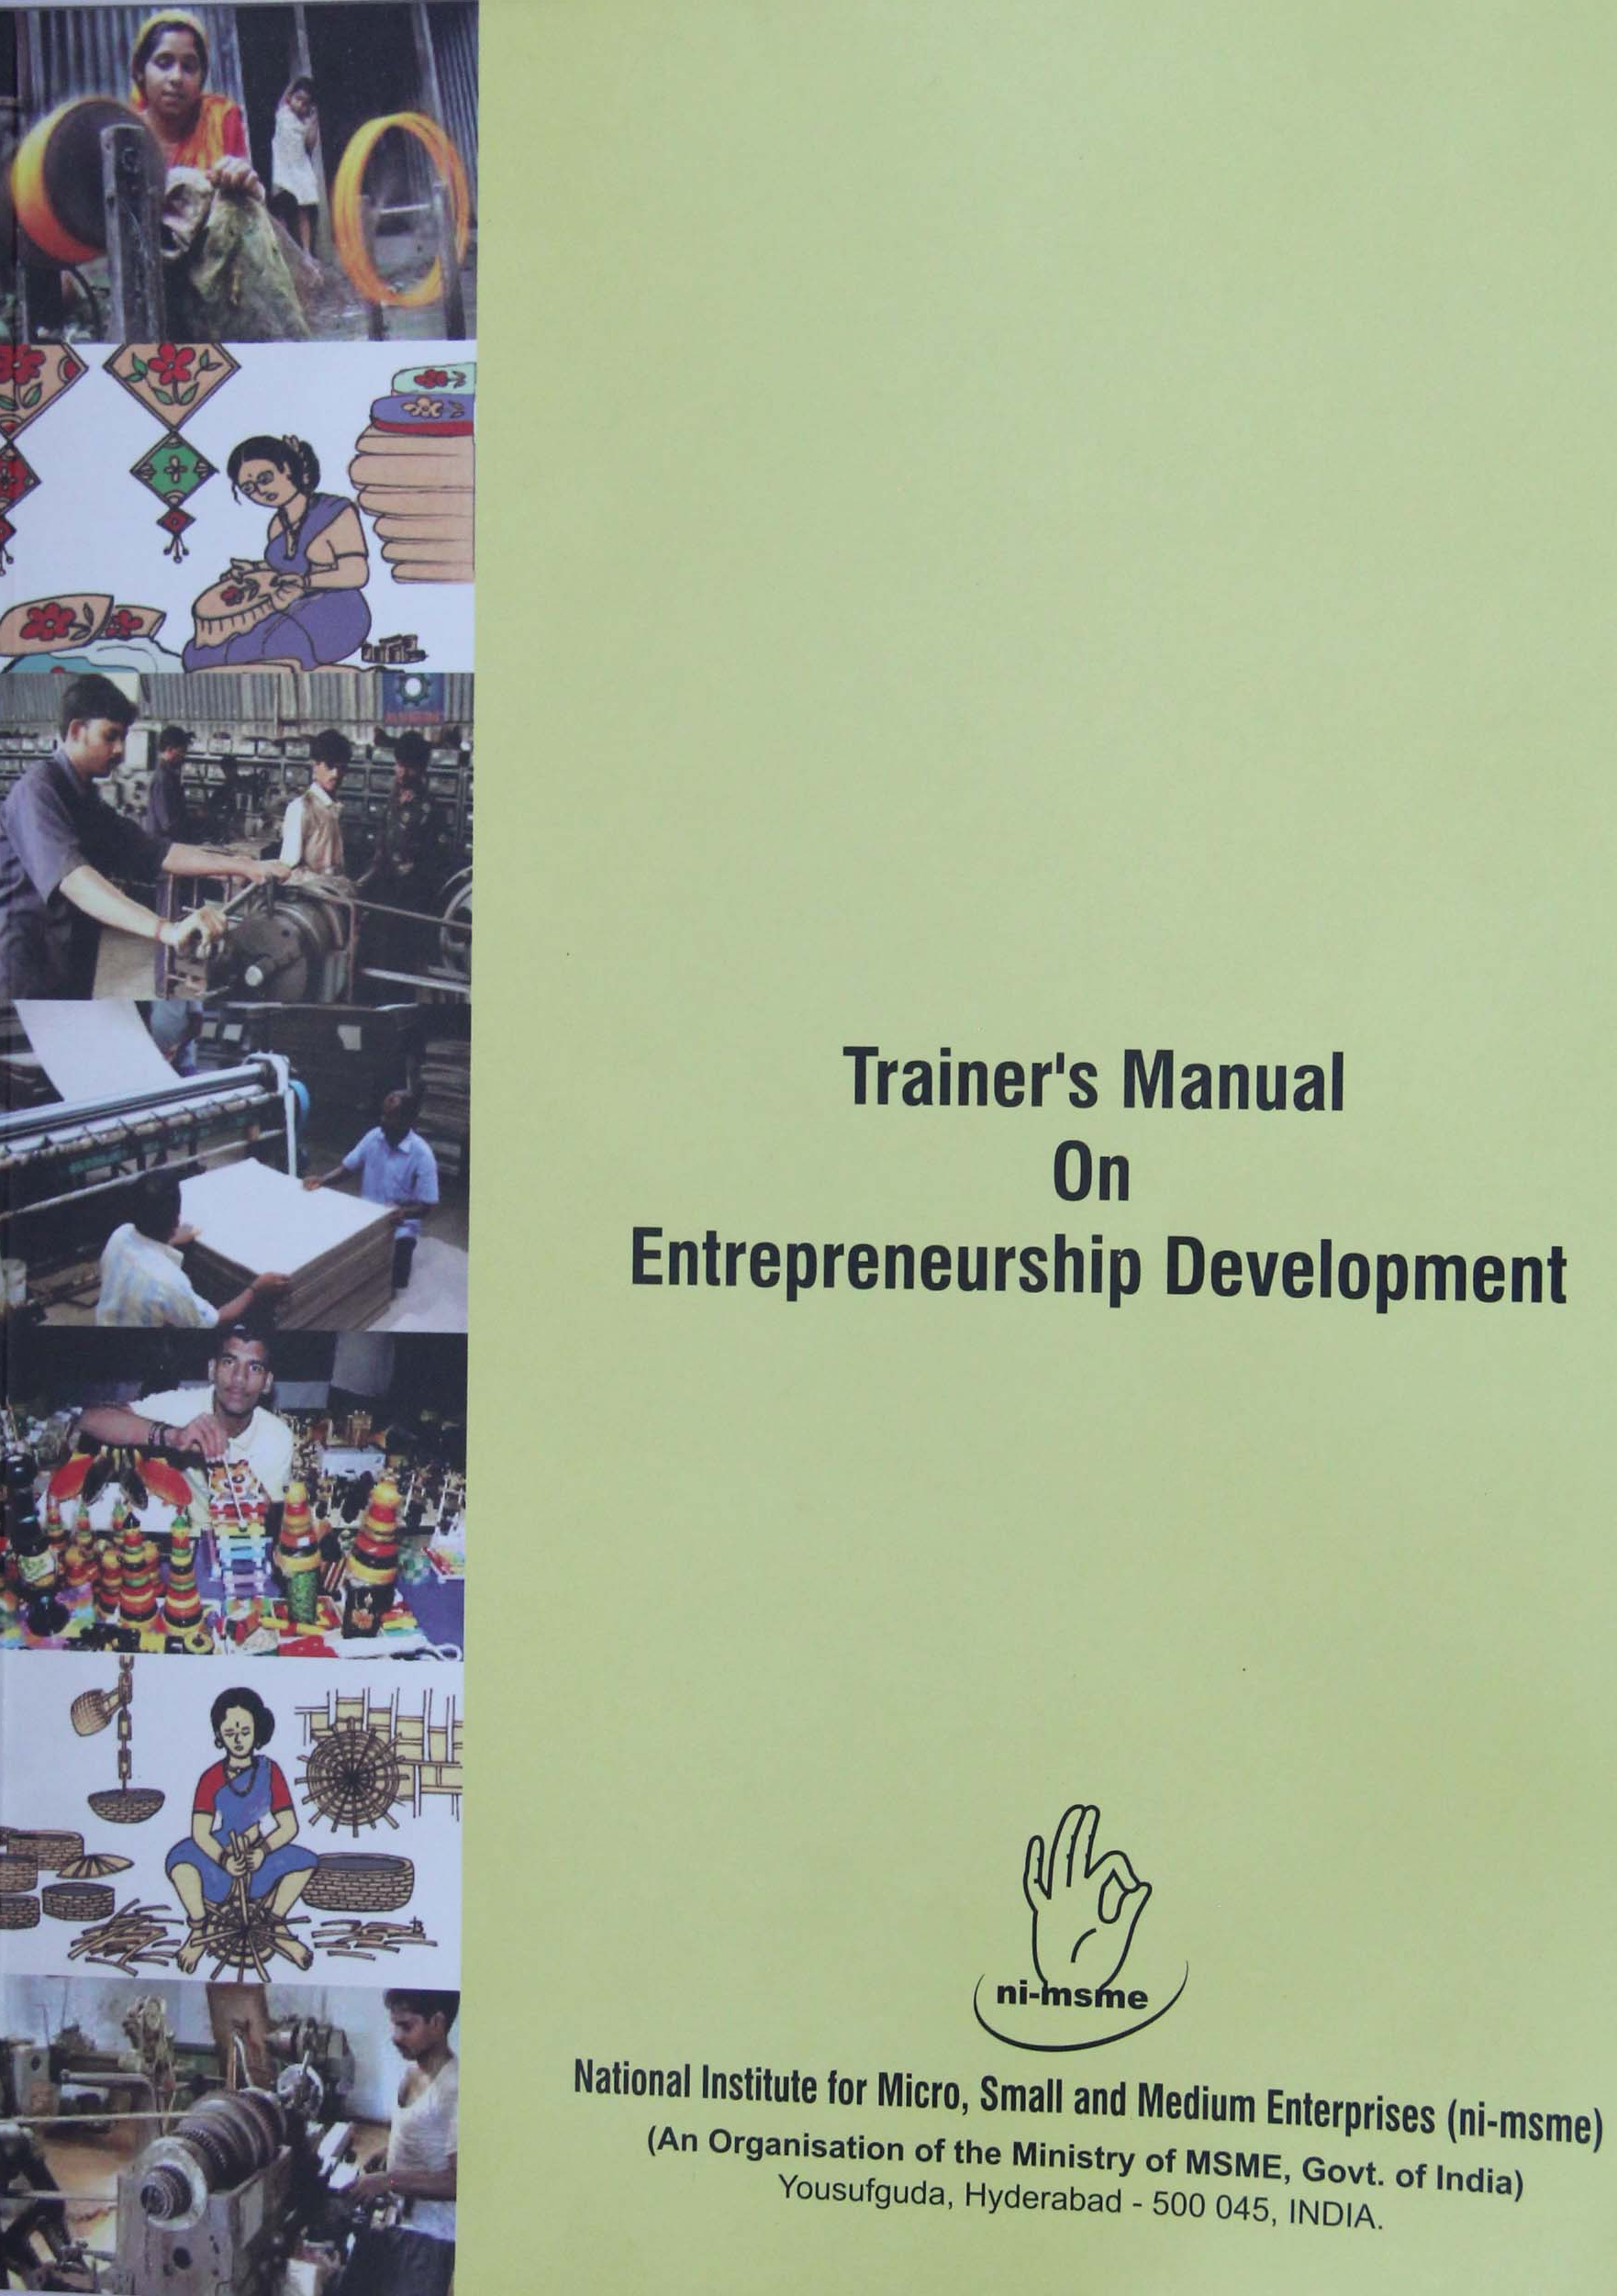 Trainer's Manual on Entrepreneurship Development